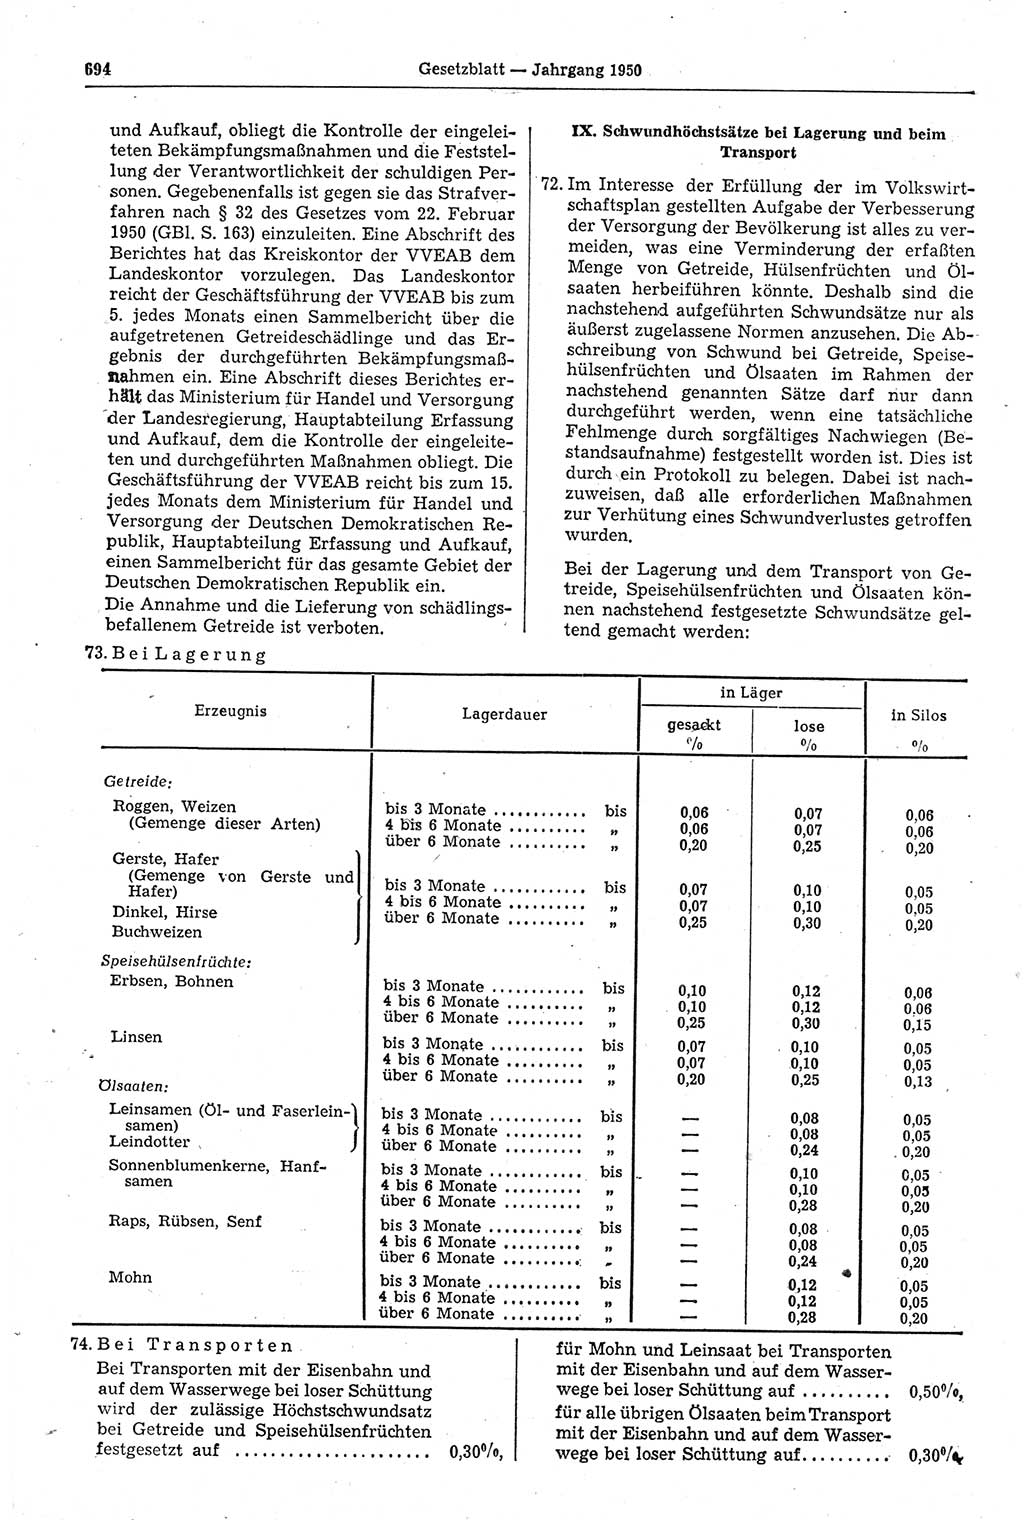 Gesetzblatt (GBl.) der Deutschen Demokratischen Republik (DDR) 1950, Seite 694 (GBl. DDR 1950, S. 694)